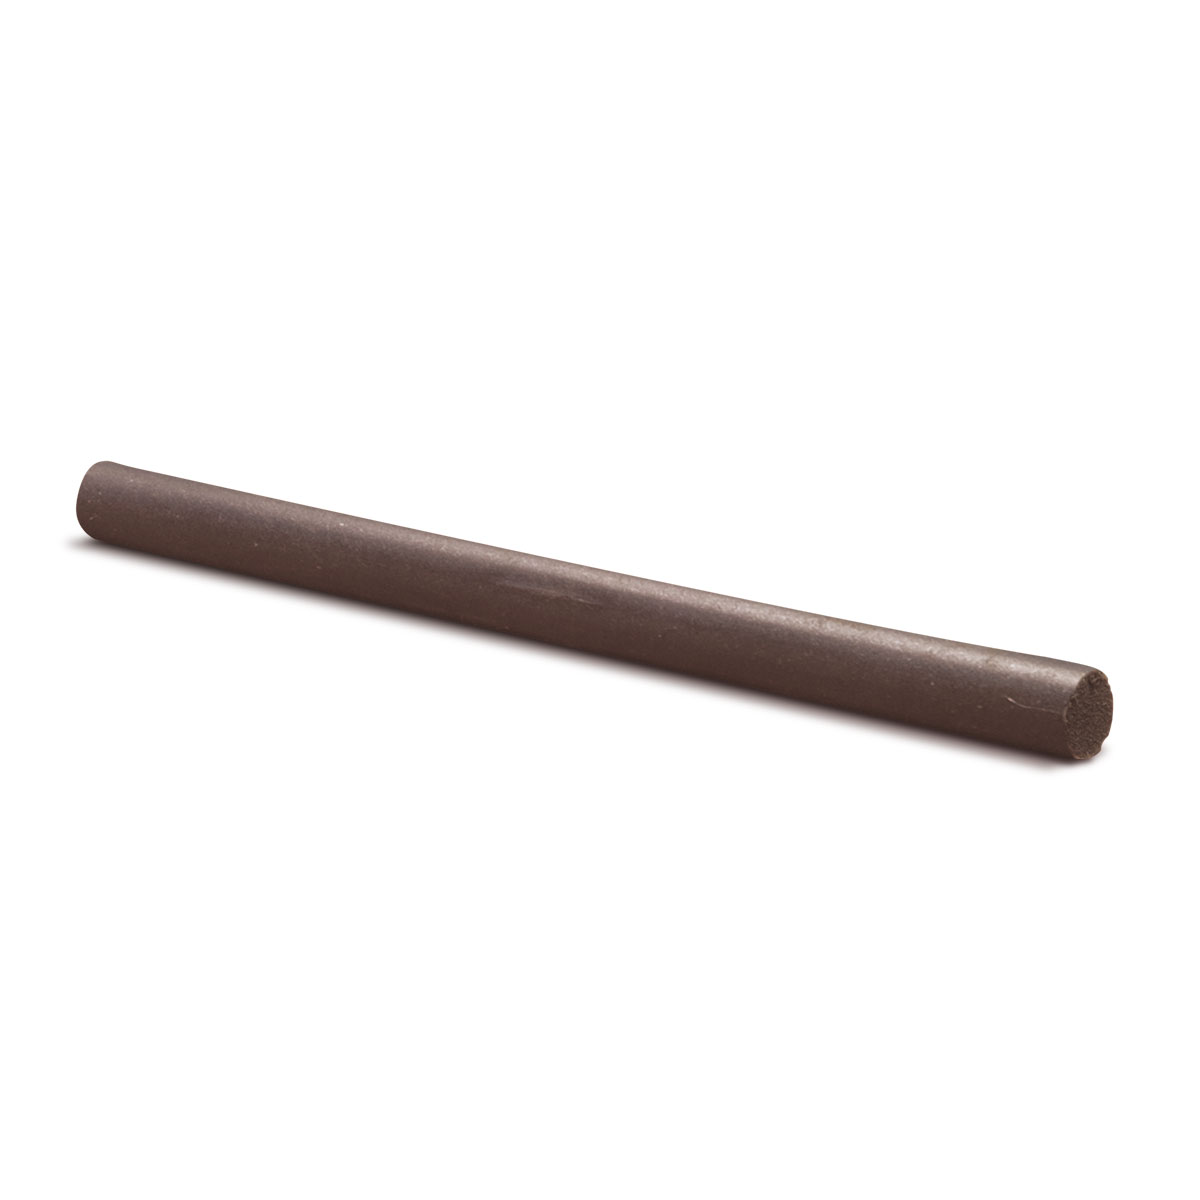 Cratex grinding stick, Ø 12,5 x 150 mm, Grain size 90, Round, Dark brown